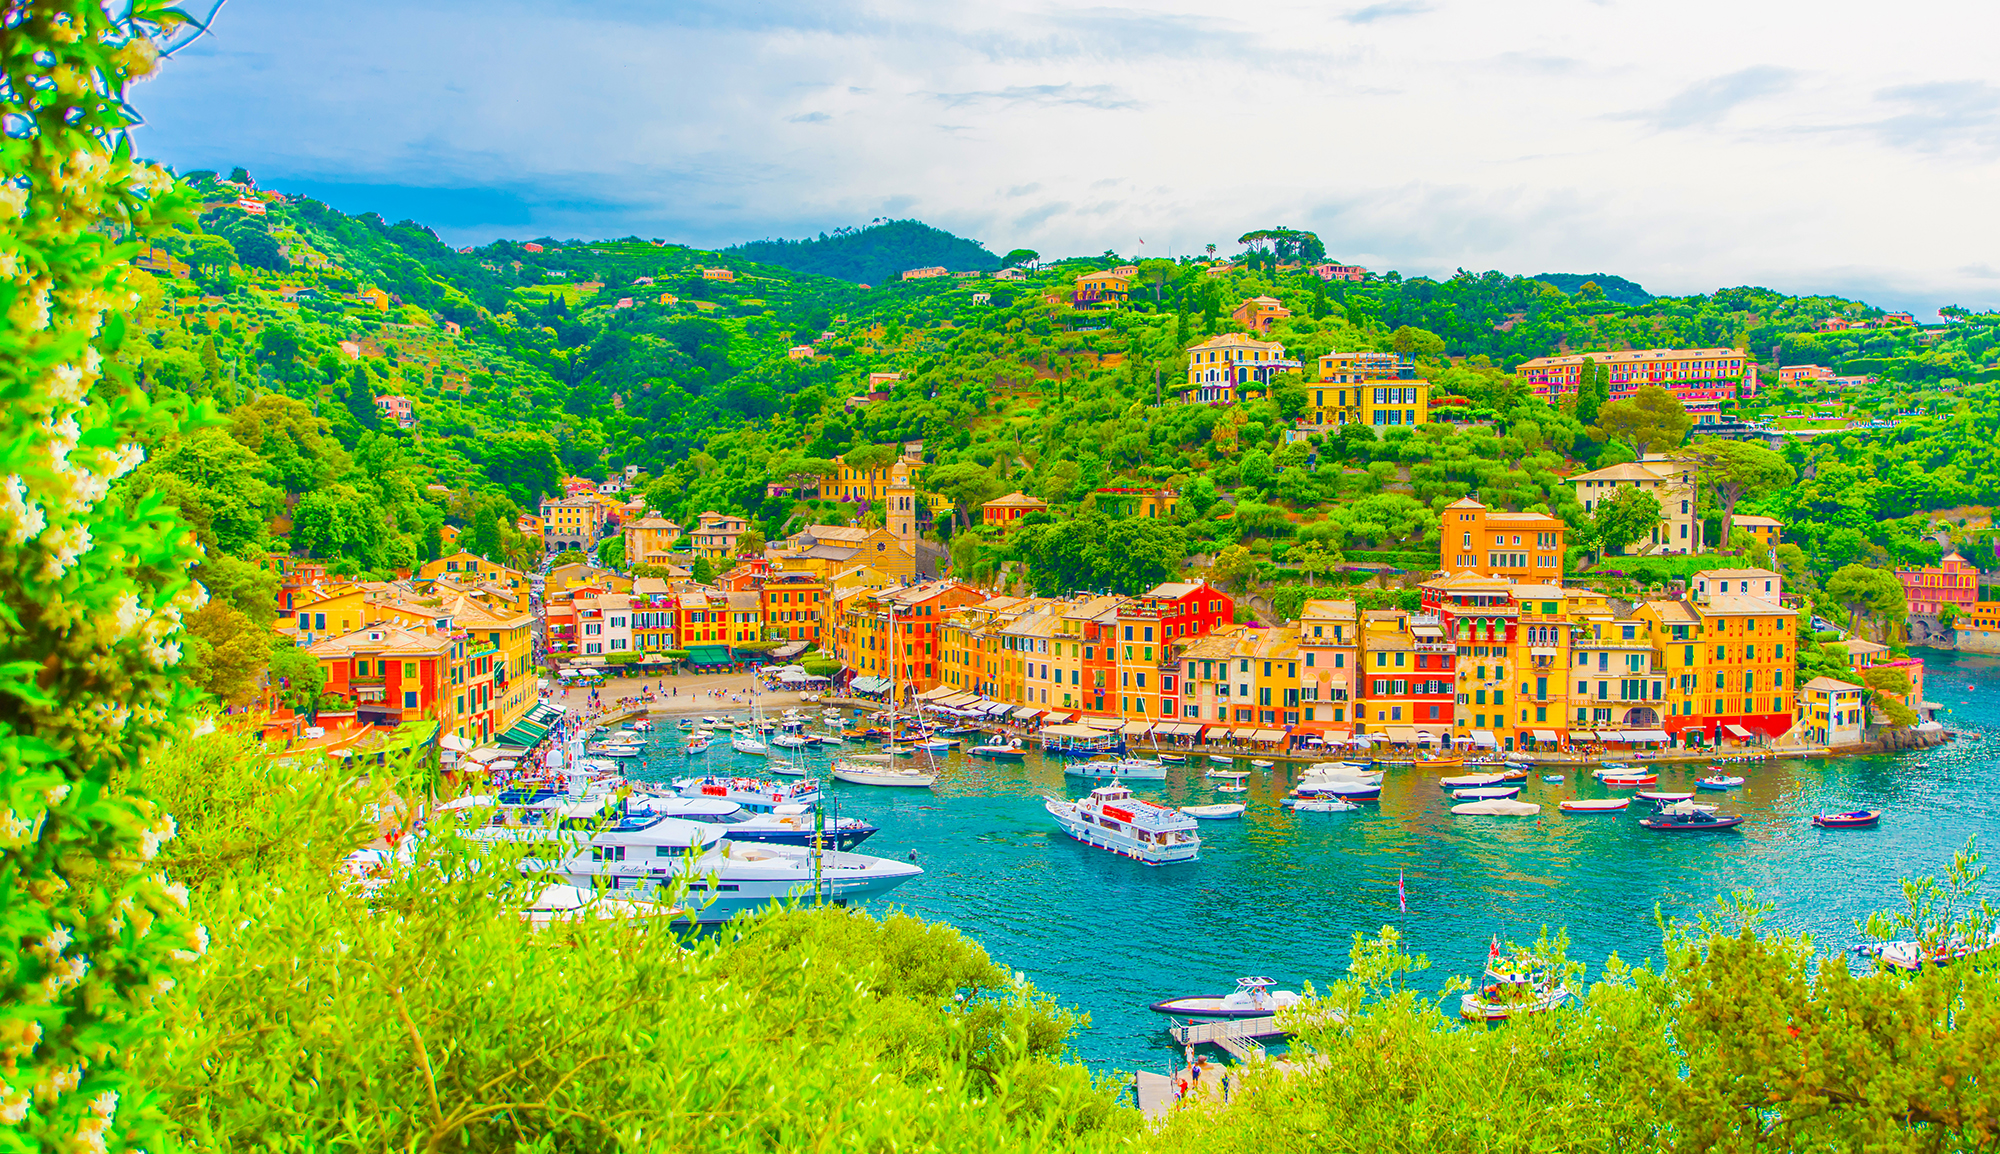 Portofino in Liguria, Italy